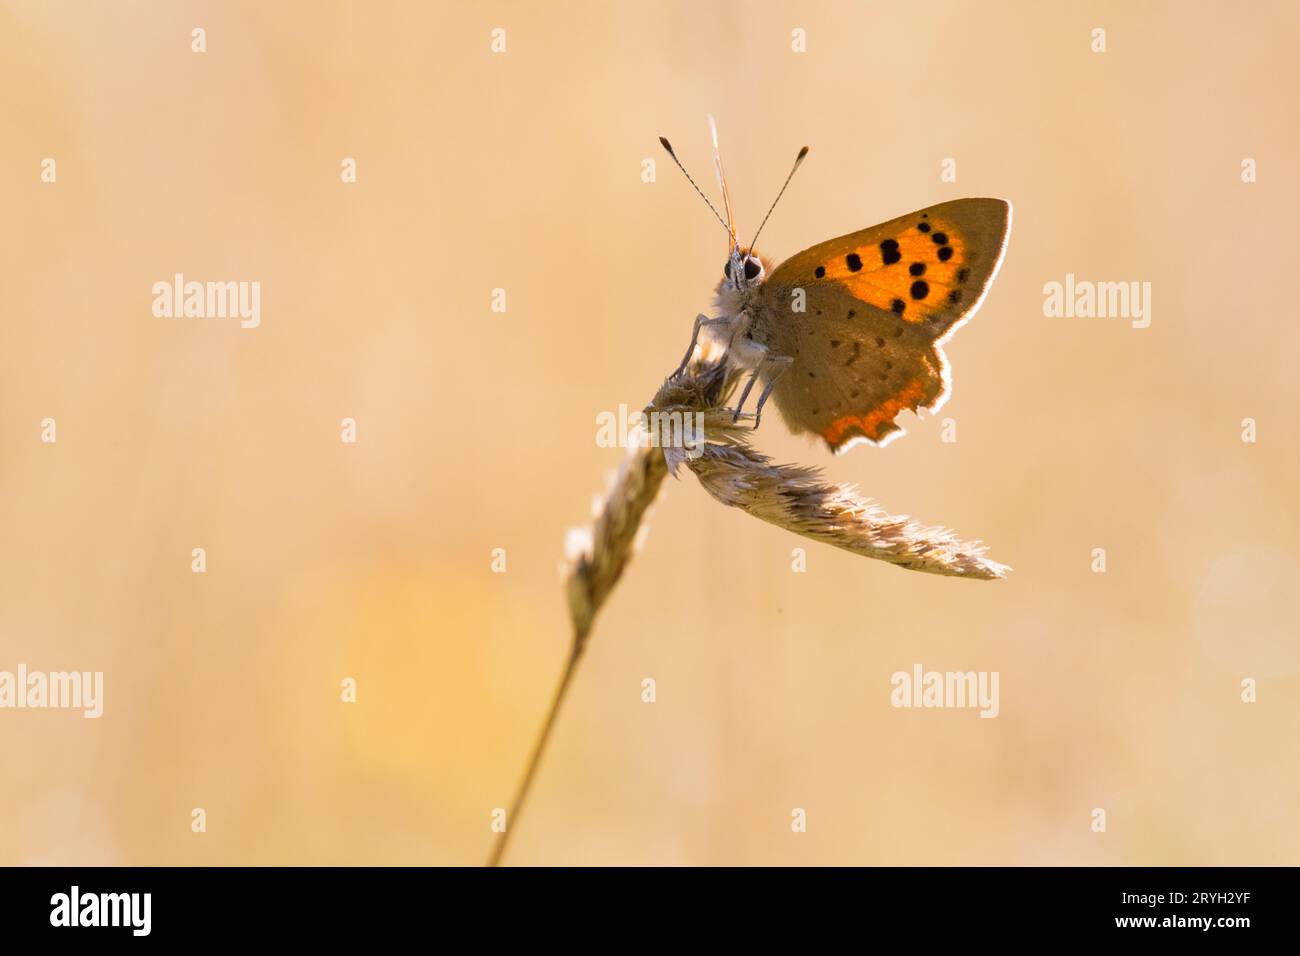 Petit papillon de cuivre (Lycaena phlaeas) perché sur une tête de semis d'herbe dans un pré. Powys, pays de Galles. Août. Banque D'Images